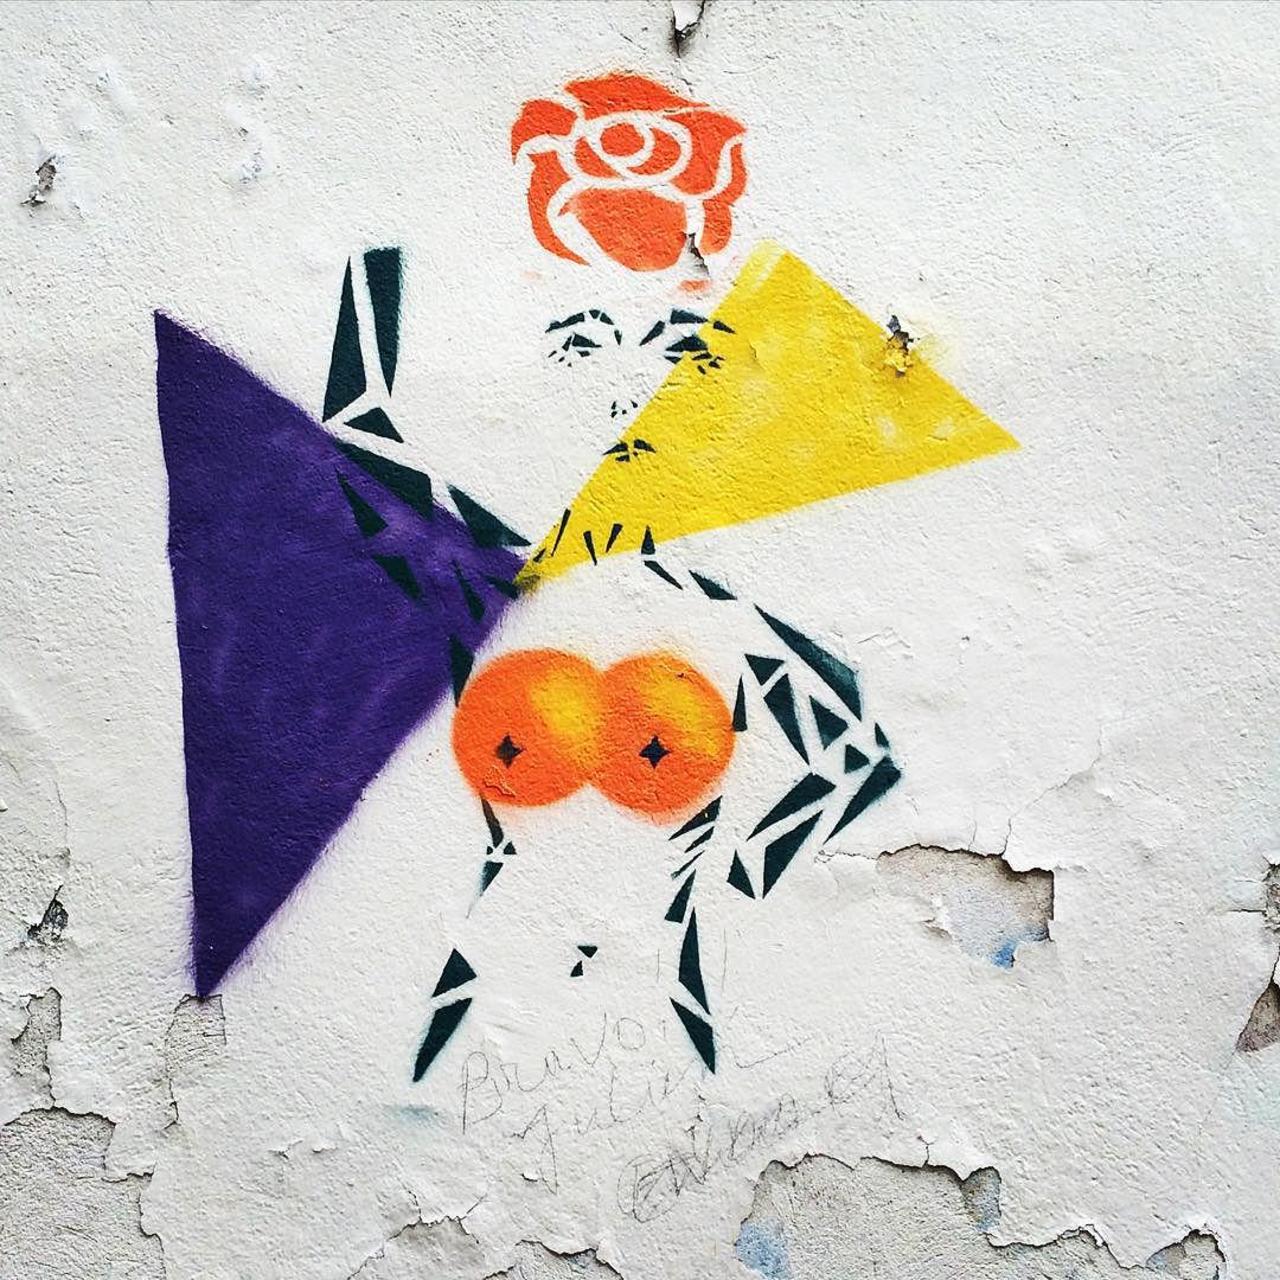 http://ift.tt/1KiqpQt #Paris #graffiti photo by julosteart http://ift.tt/1GcqCq4 #StreetArt http://t.co/JkedRSGkPr